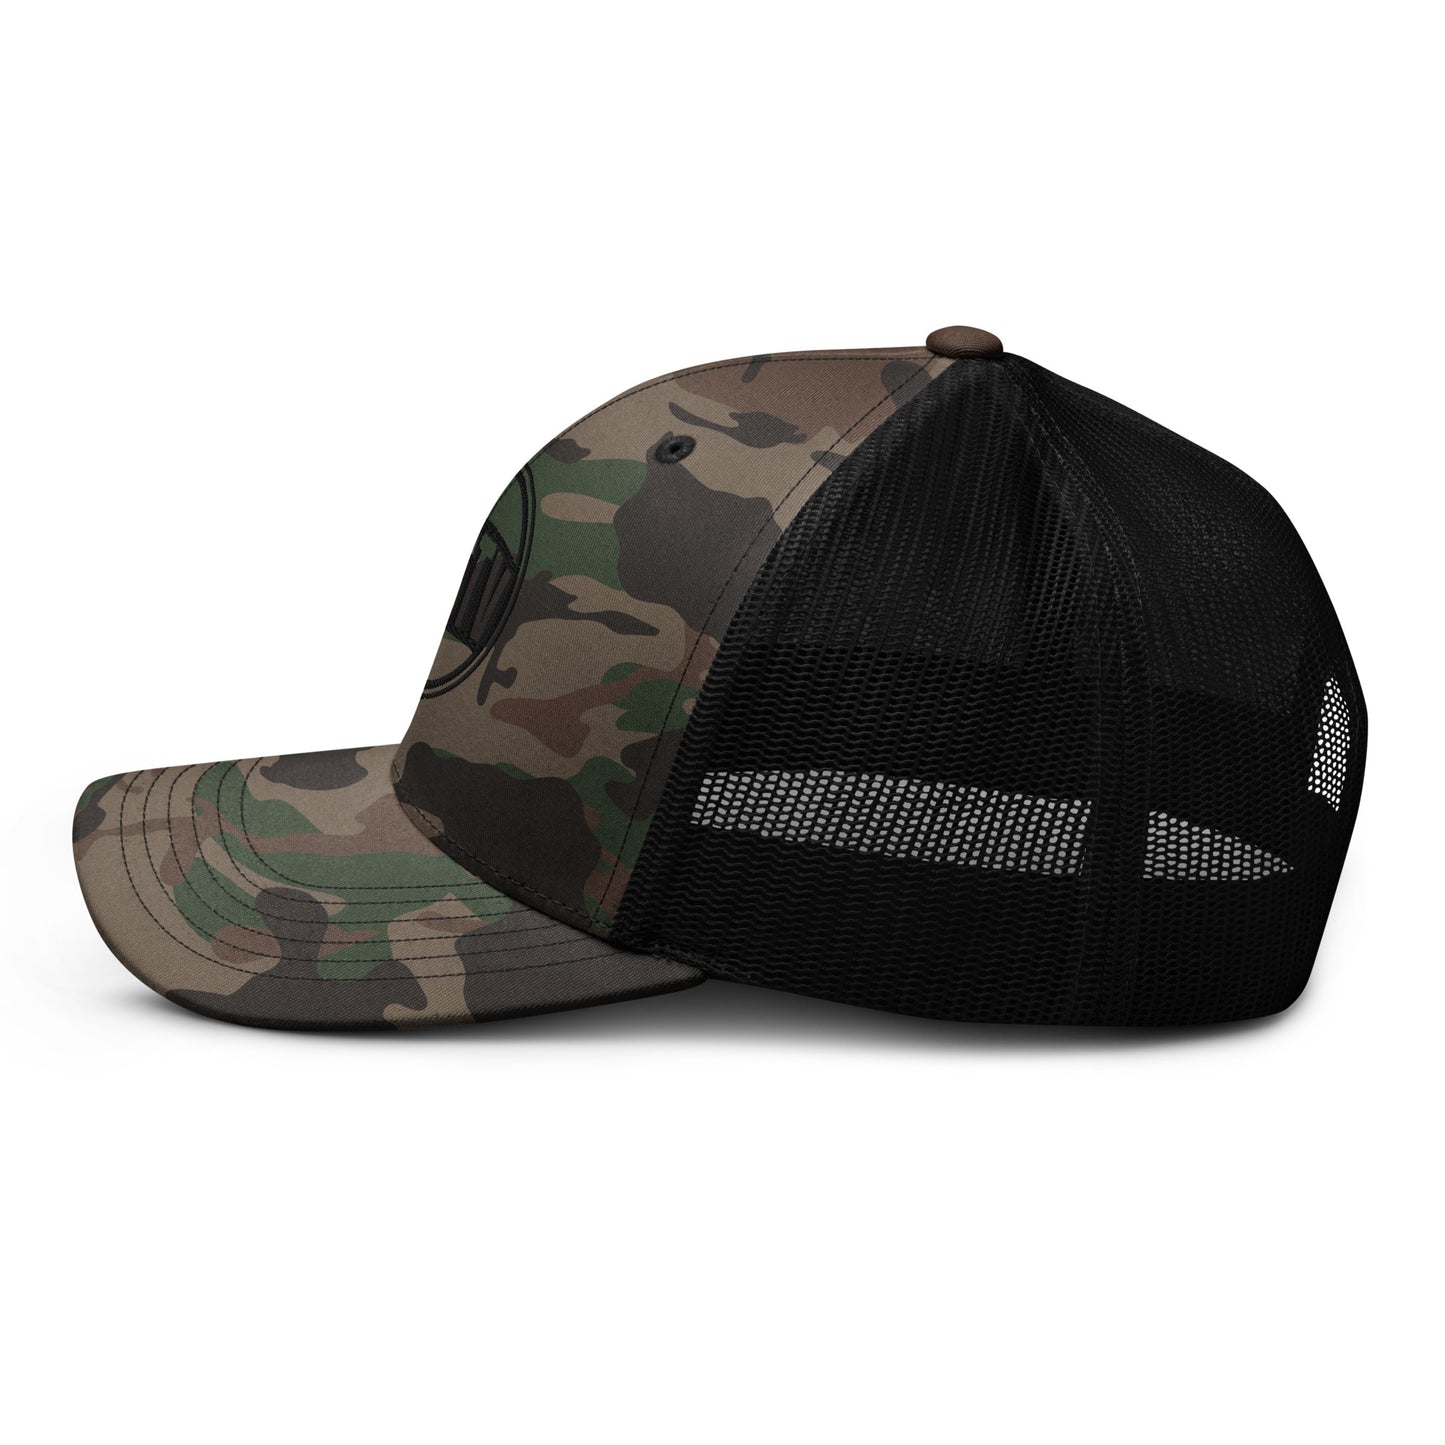 NYSTV LOGO Camouflage trucker hat